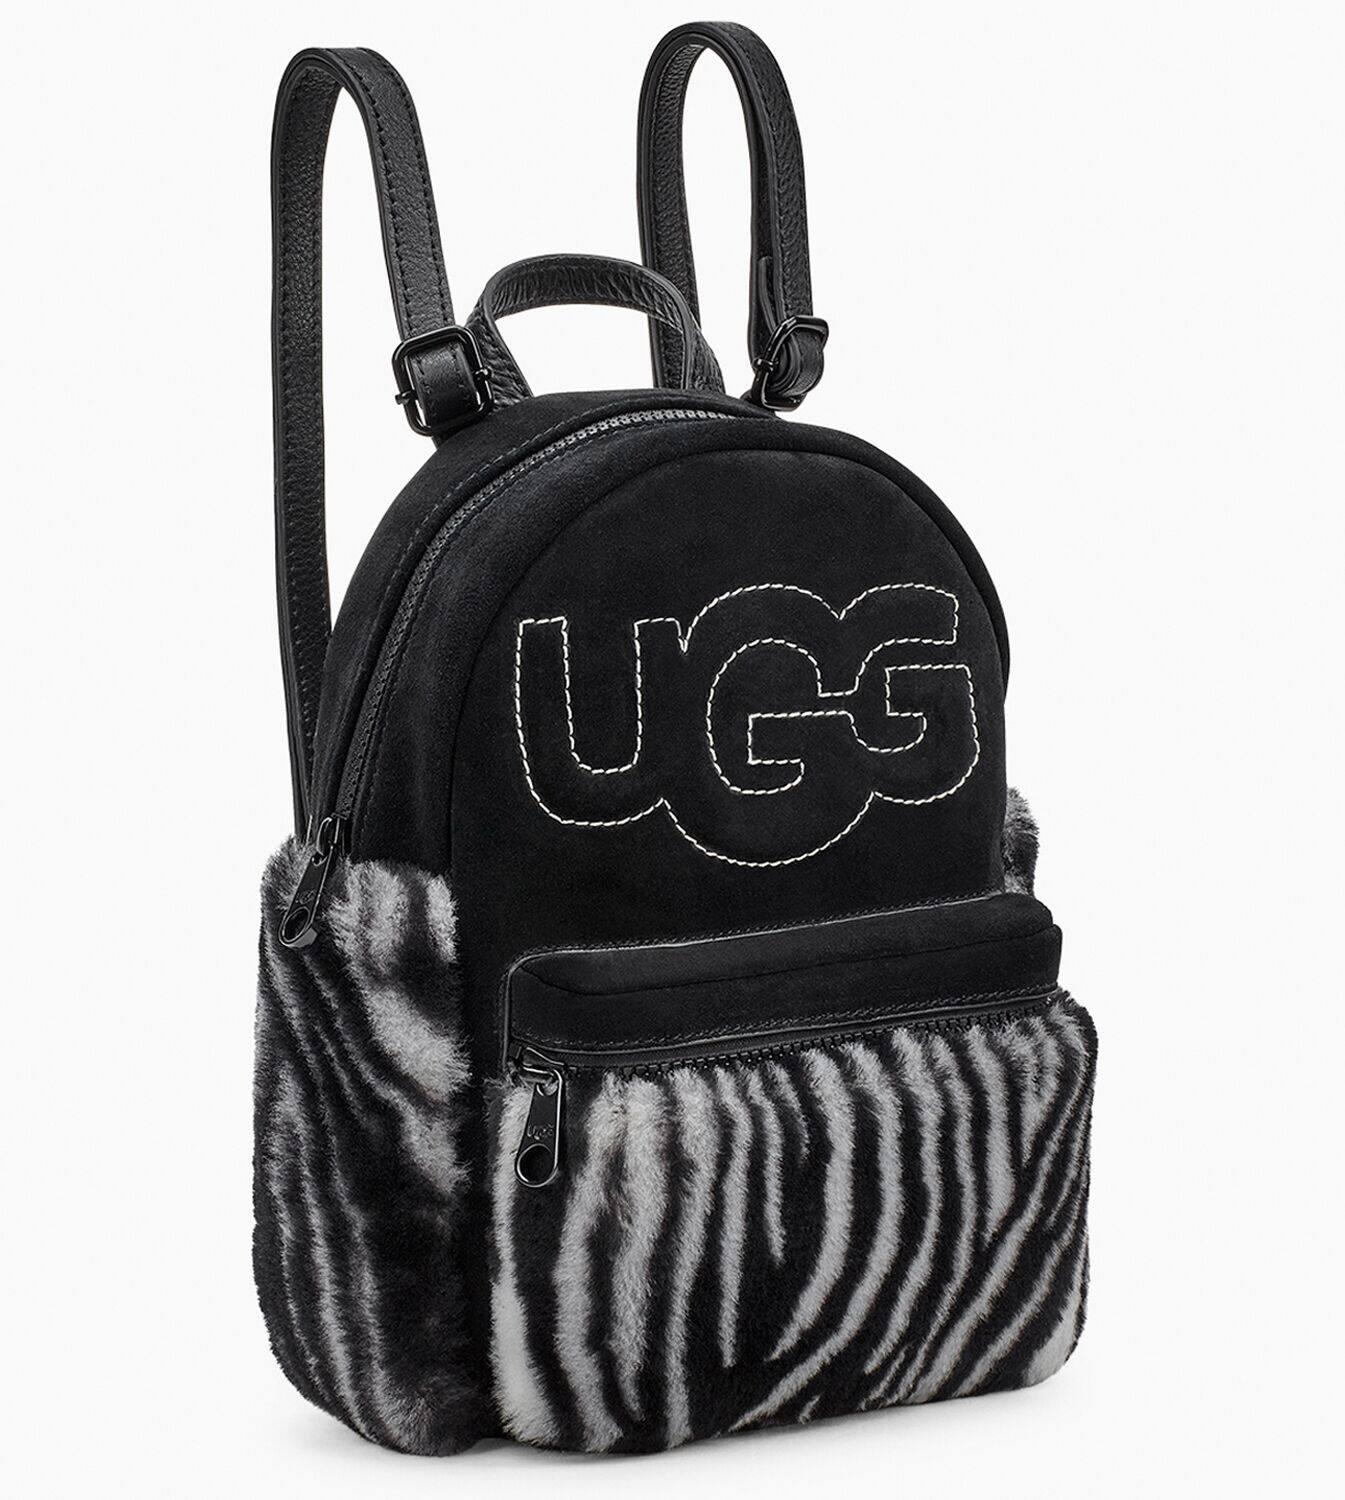 ugg backpack sale